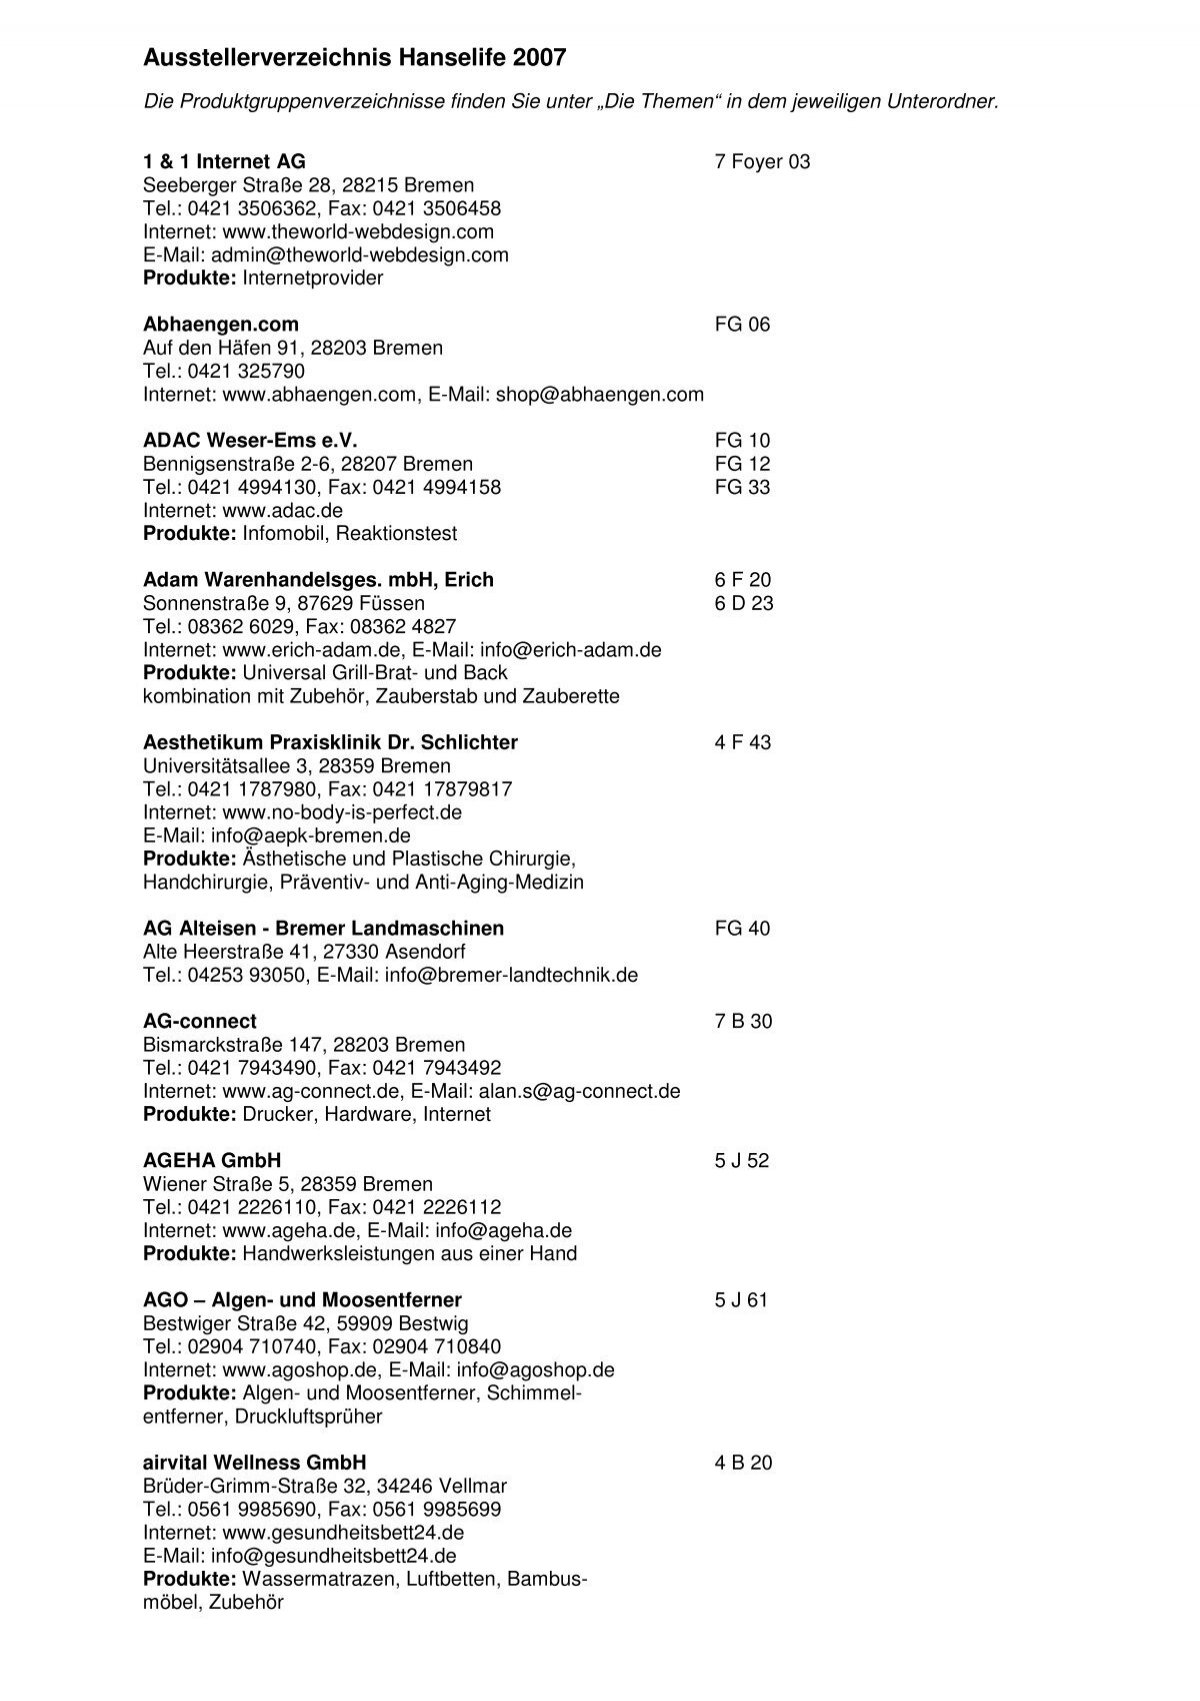 Ausstellerverzeichnis Balingen pur 2012